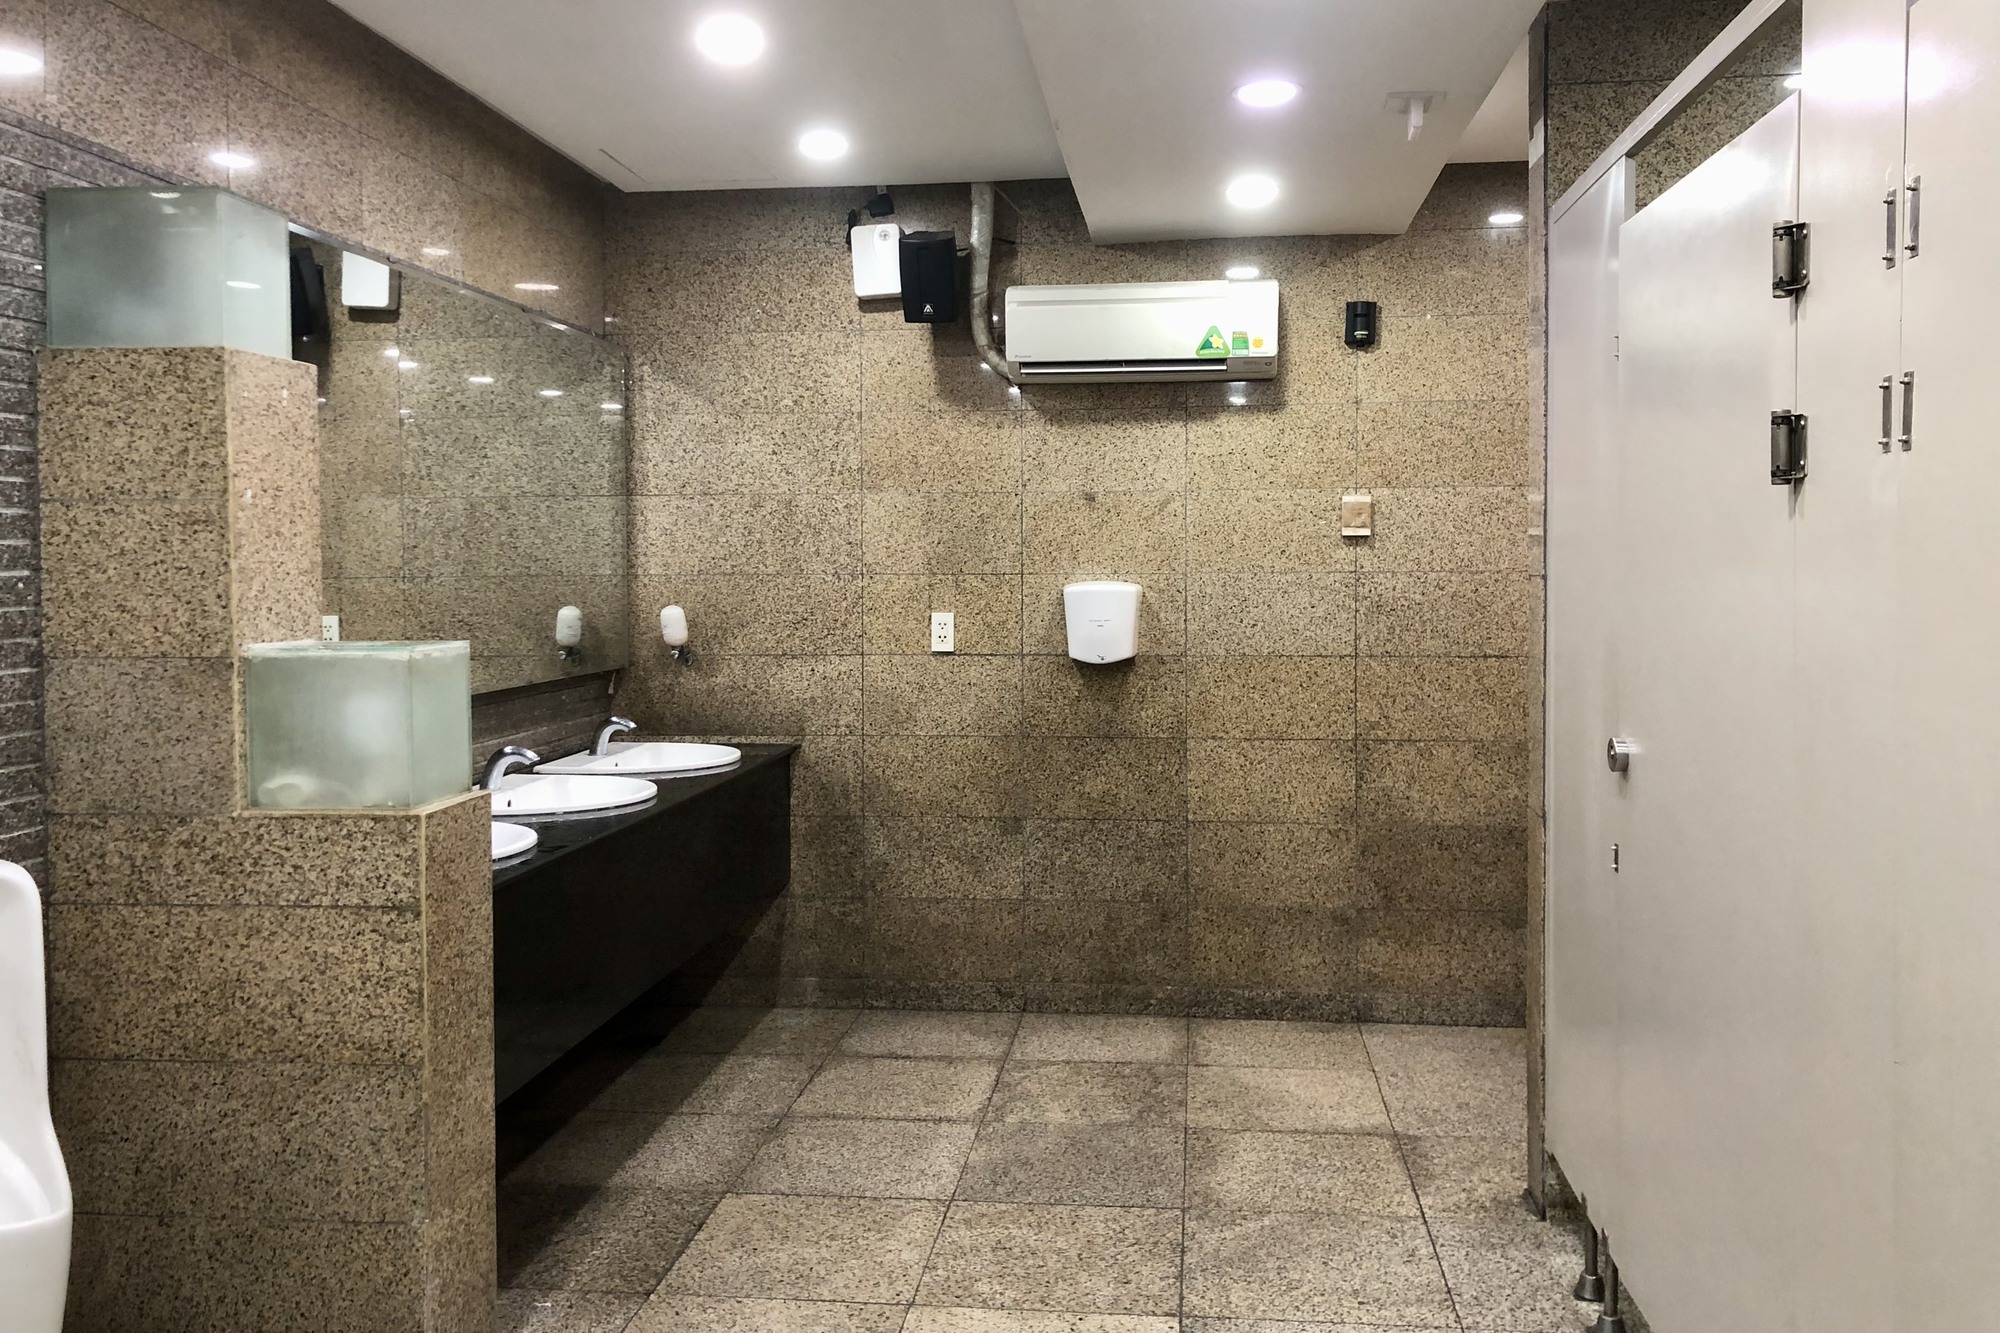 trang trí nhà vệ sinh: Tin tức, Video, hình ảnh trang trí nhà vệ sinh